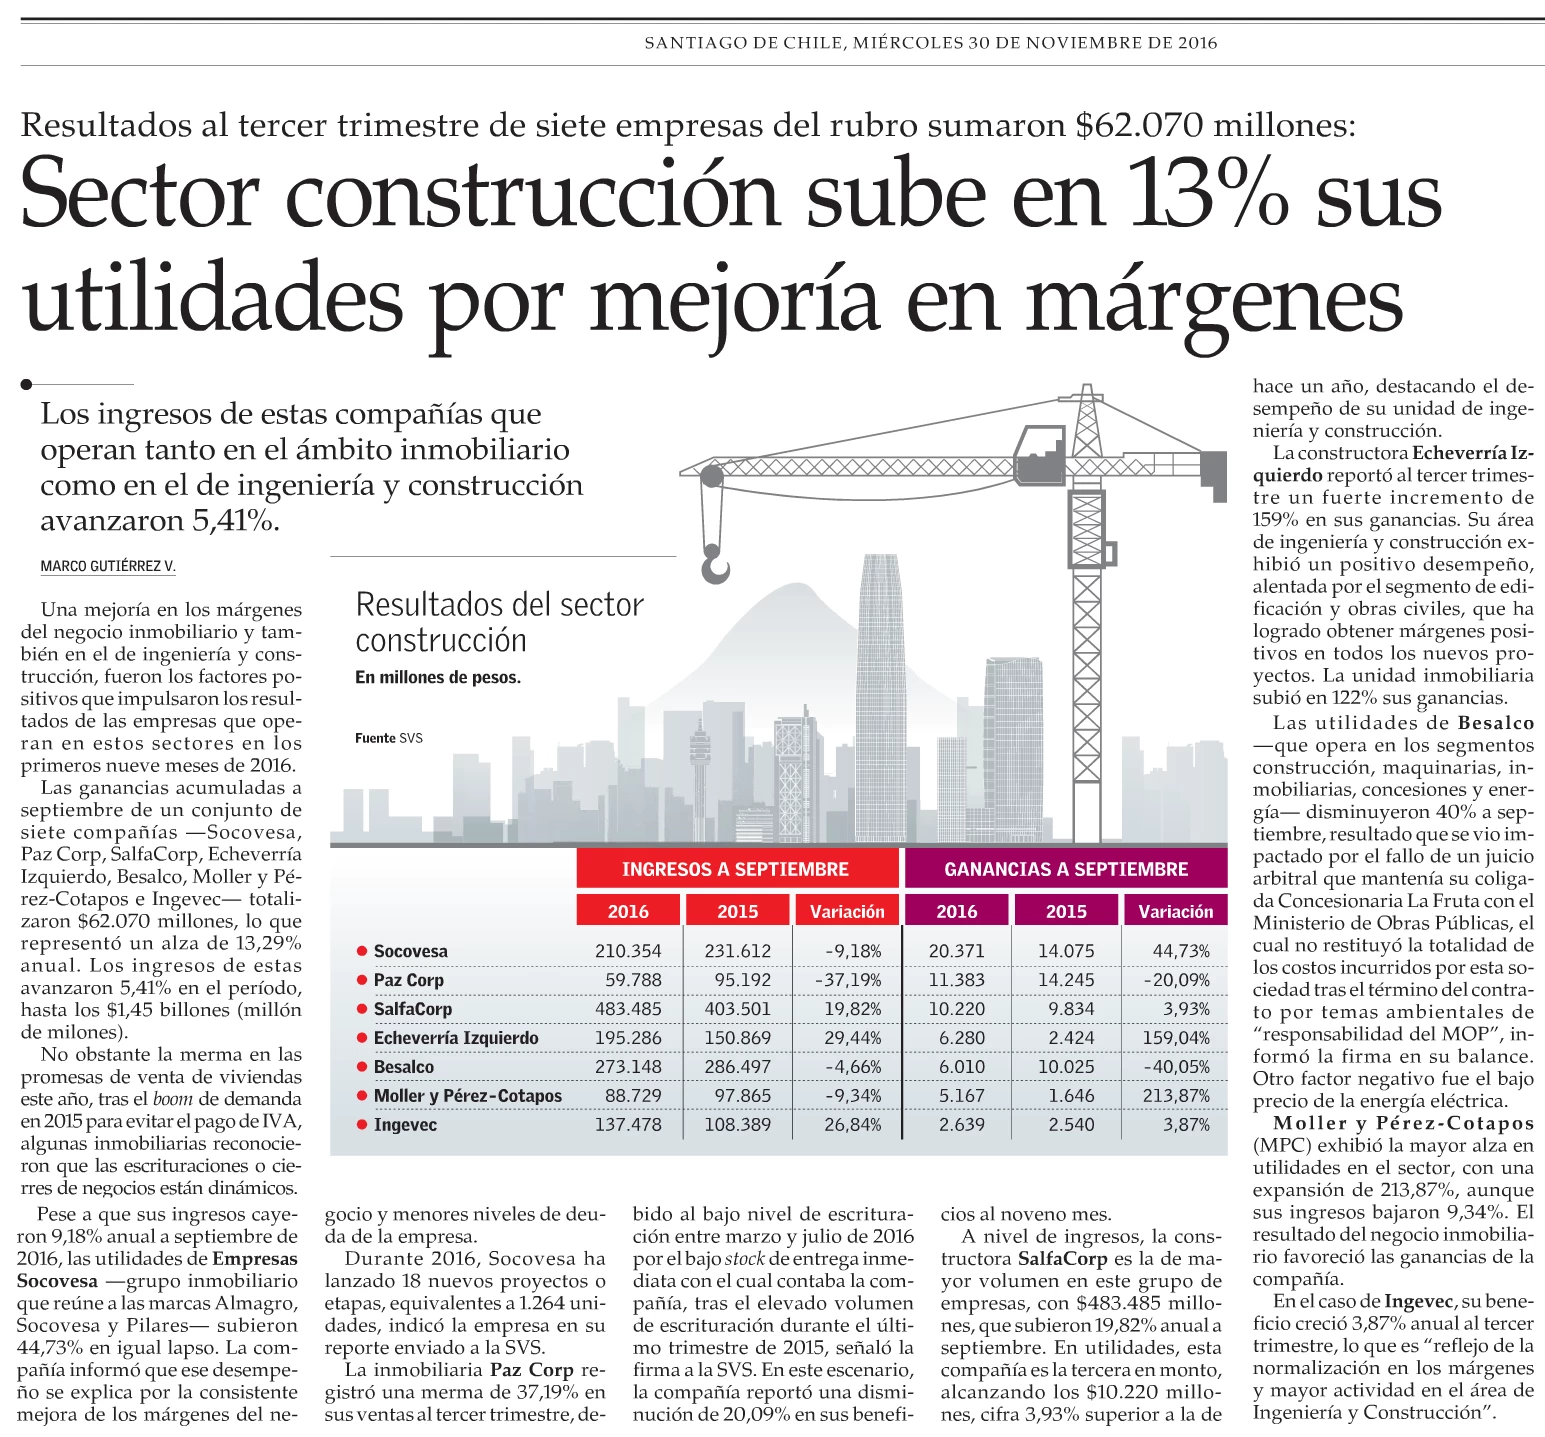 Sector construcción sube en 13% sus utilidades por mejoría en márgenes